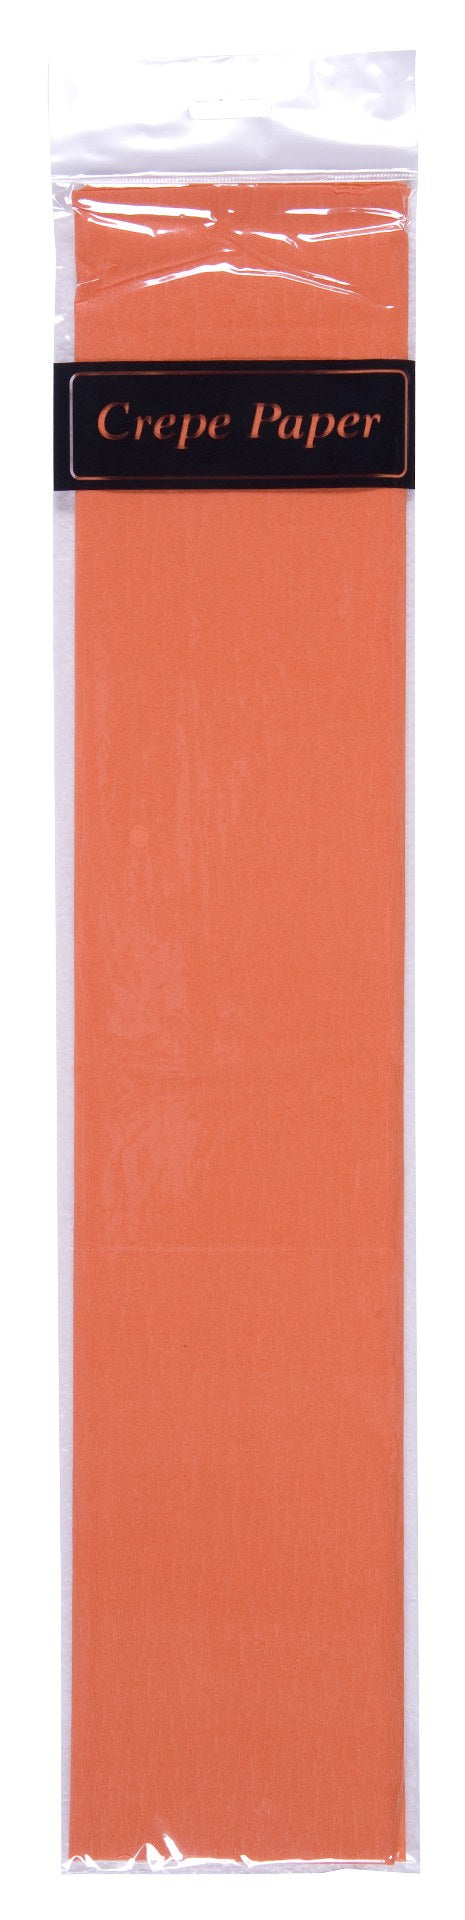 crepe paper (50cm x 2m)